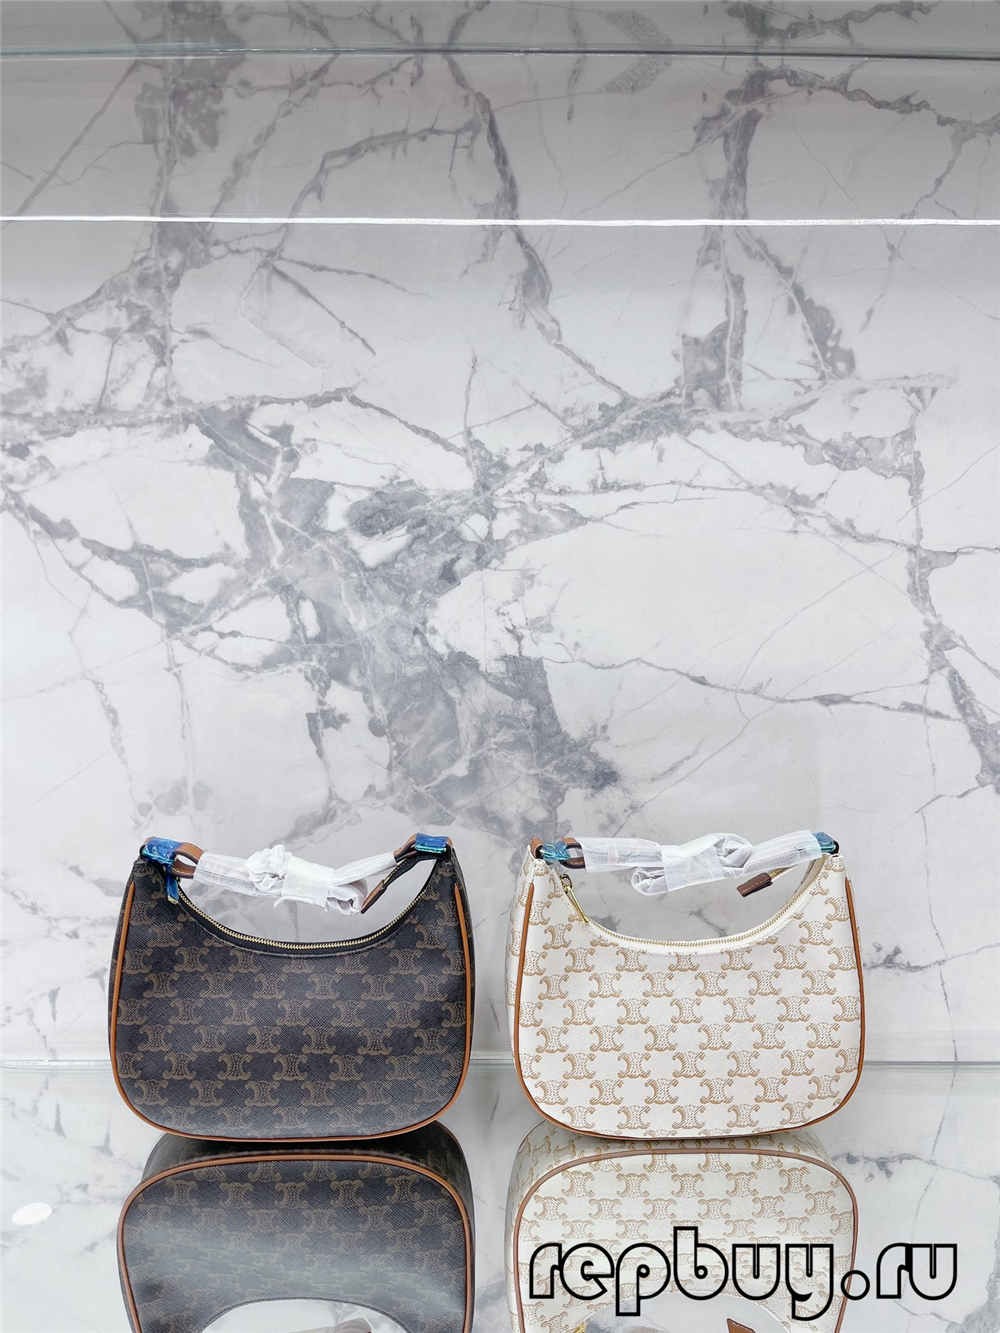 Celine Ava Yakanakisa mhando Replica mabhegi (2022 achangoburwa)-Best Quality Fake Louis Vuitton Bag Online Store, Replica designer bag ru